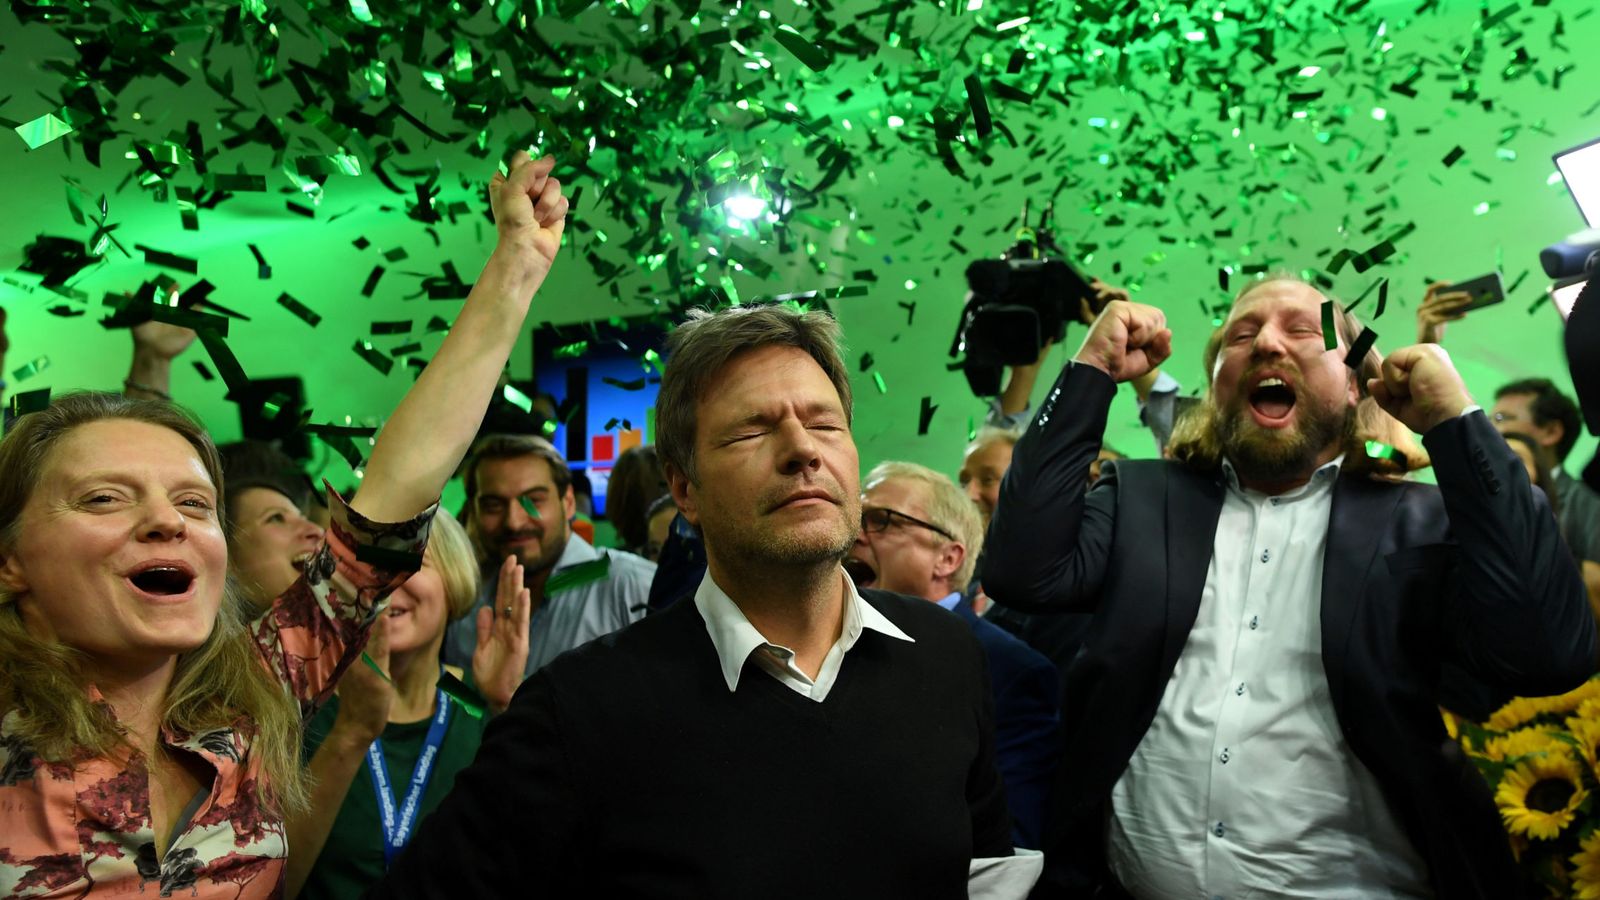 Foto: Los líderes del Partido Verde, Henrike Hahn, Robert Habeck y Anton Hofreiter, celebran los resultados de las elecciones en Baviera, el 14 de octubre de 2018. (Reuters)